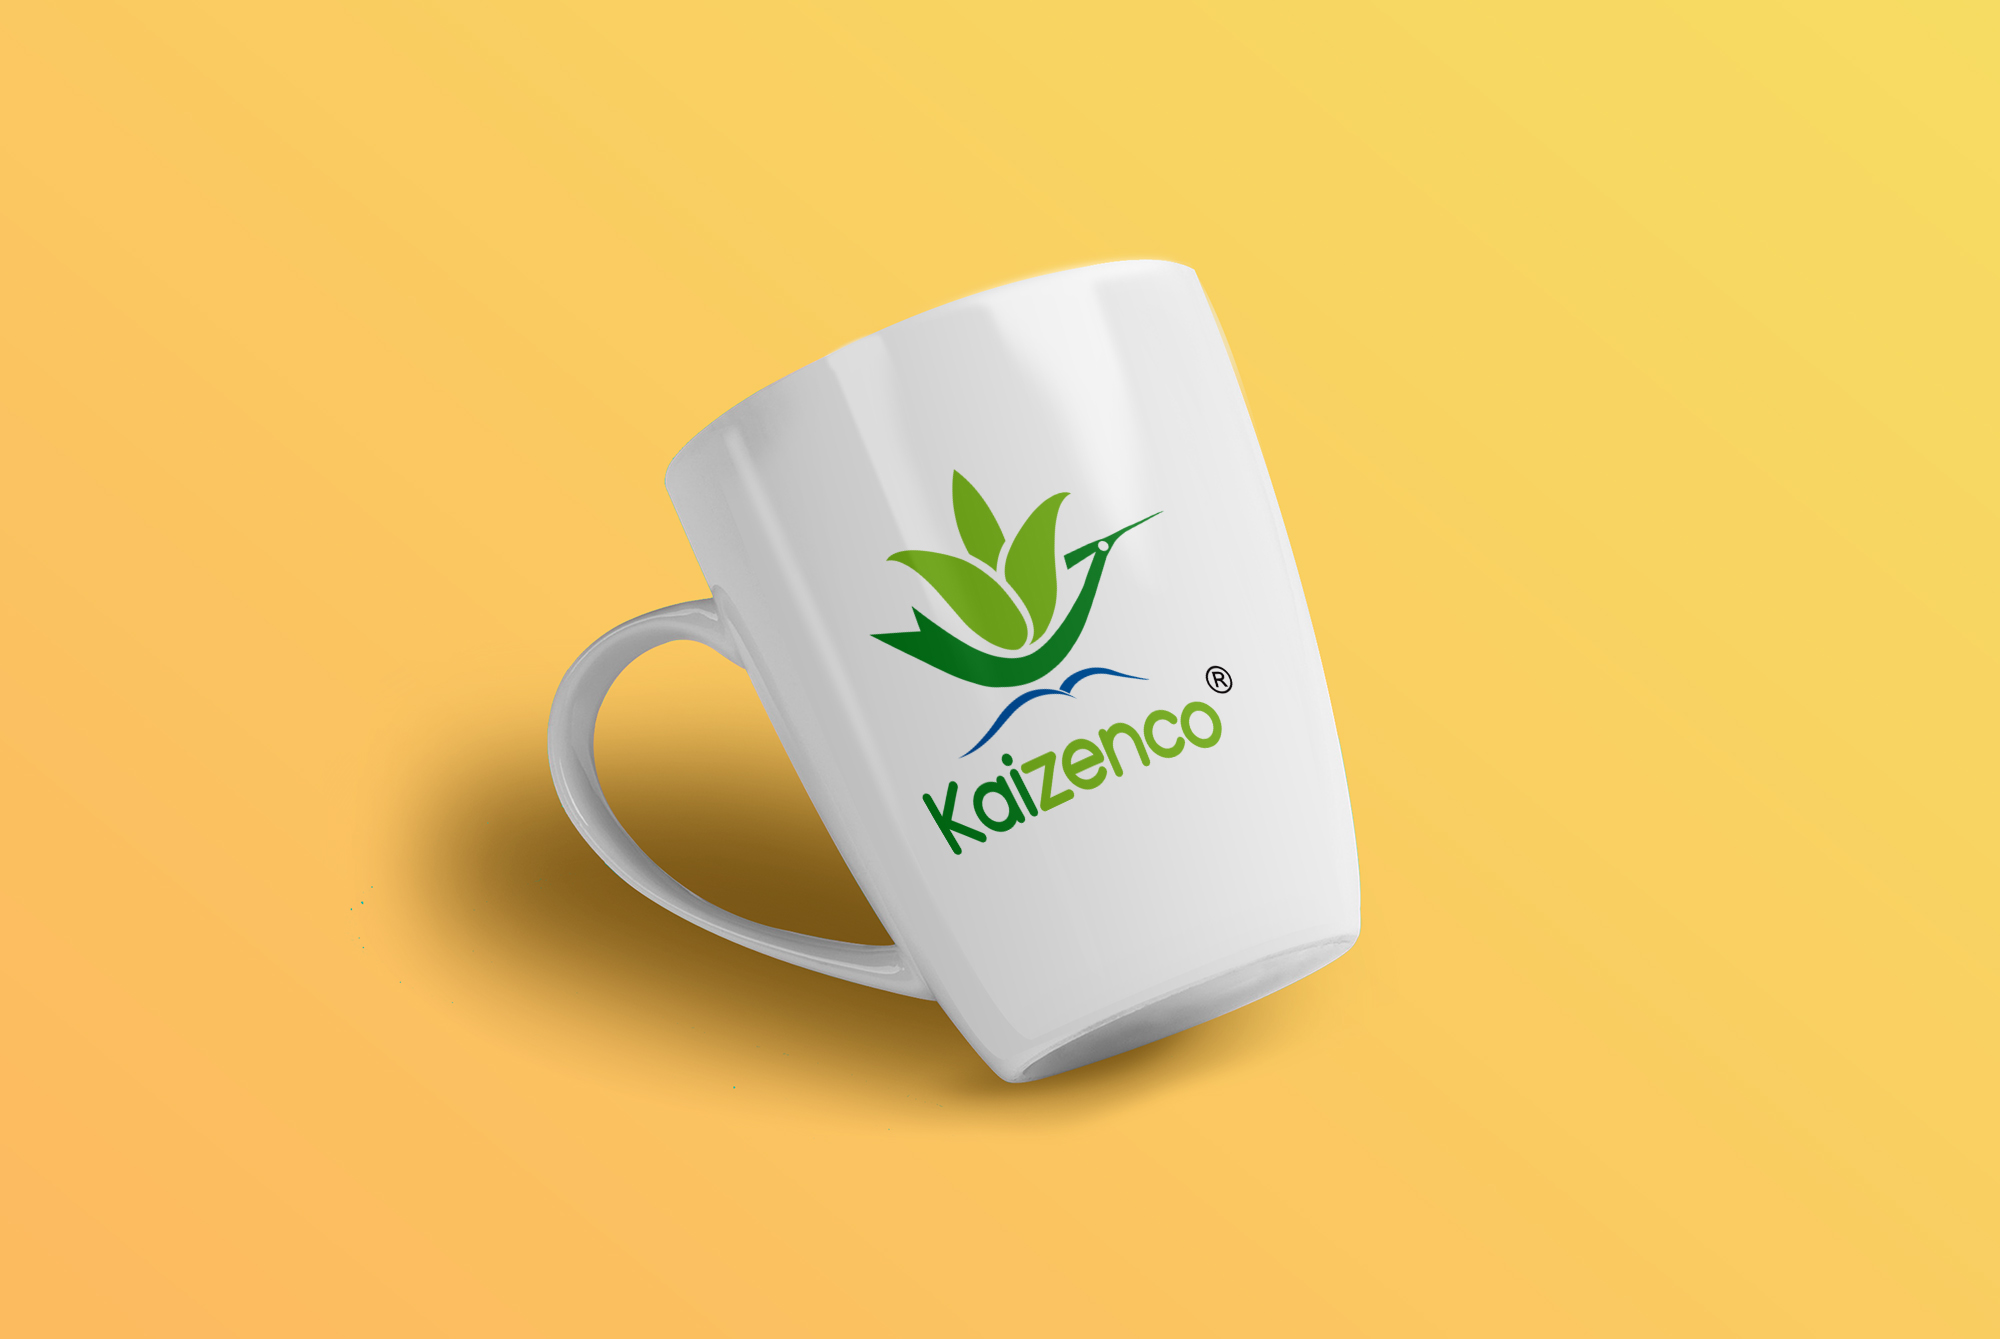 Logo Kaizenco [www.oenix.vn]